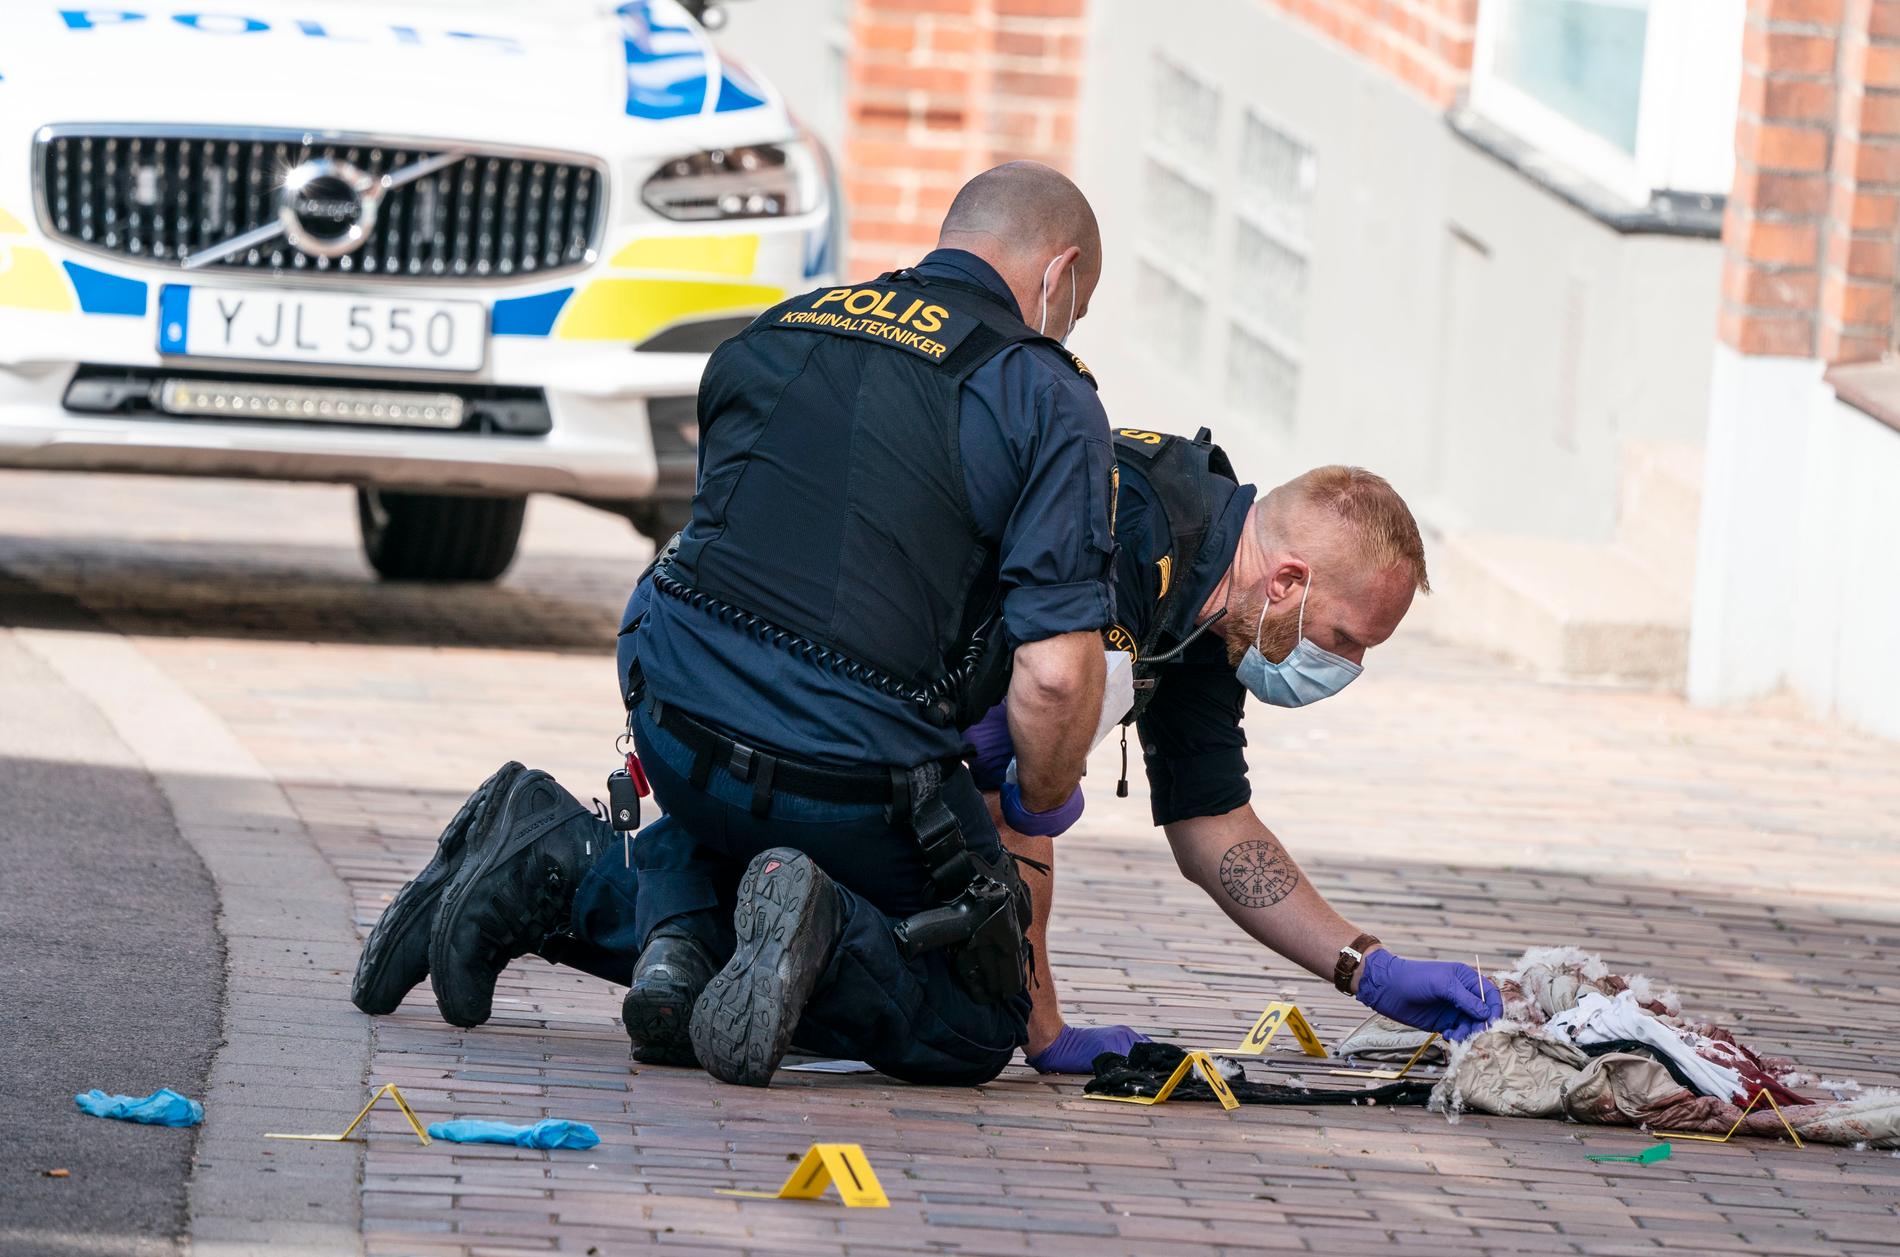 Polisens kriminaltekniker i centrala Helsingborg efter att en kvinna i 60-årsåldern skadats allvarligt i ett knivdåd. Arkivbild.